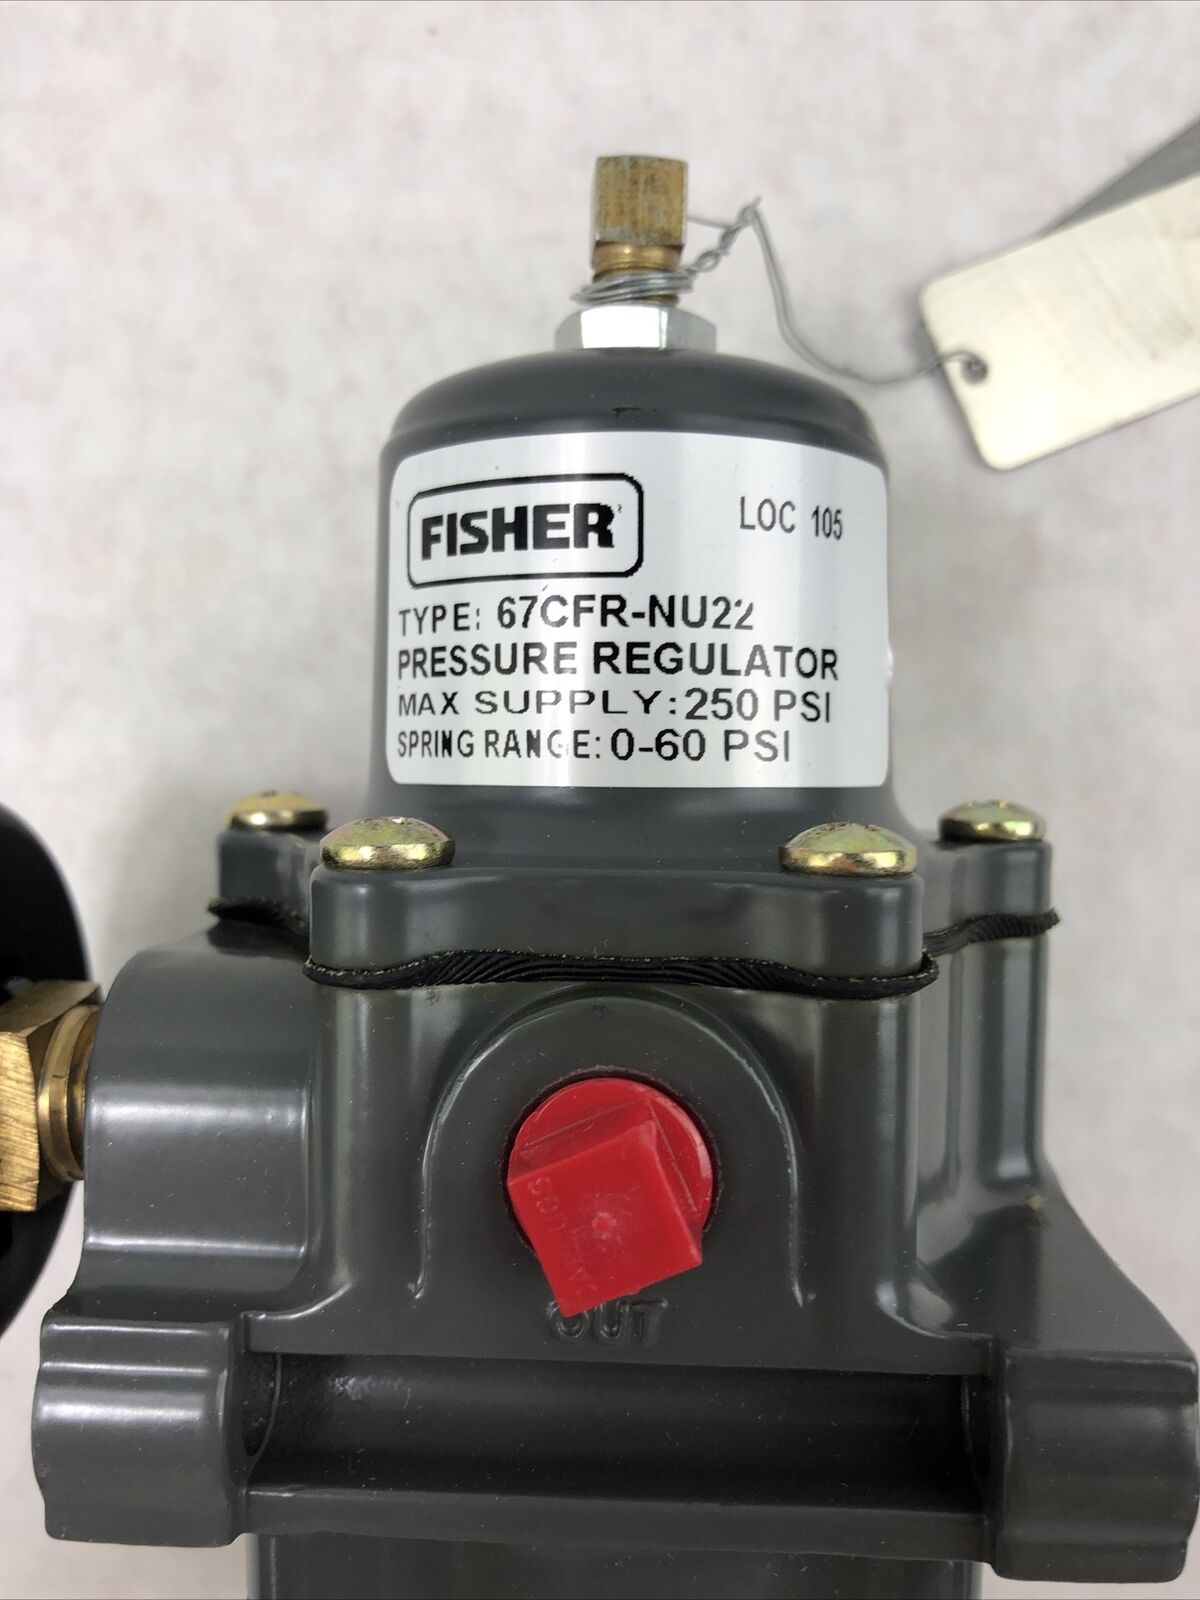 FISHER 67CFR-NU22 Pressure Regulator 250 PSIG 0-60 PSI Spring Range